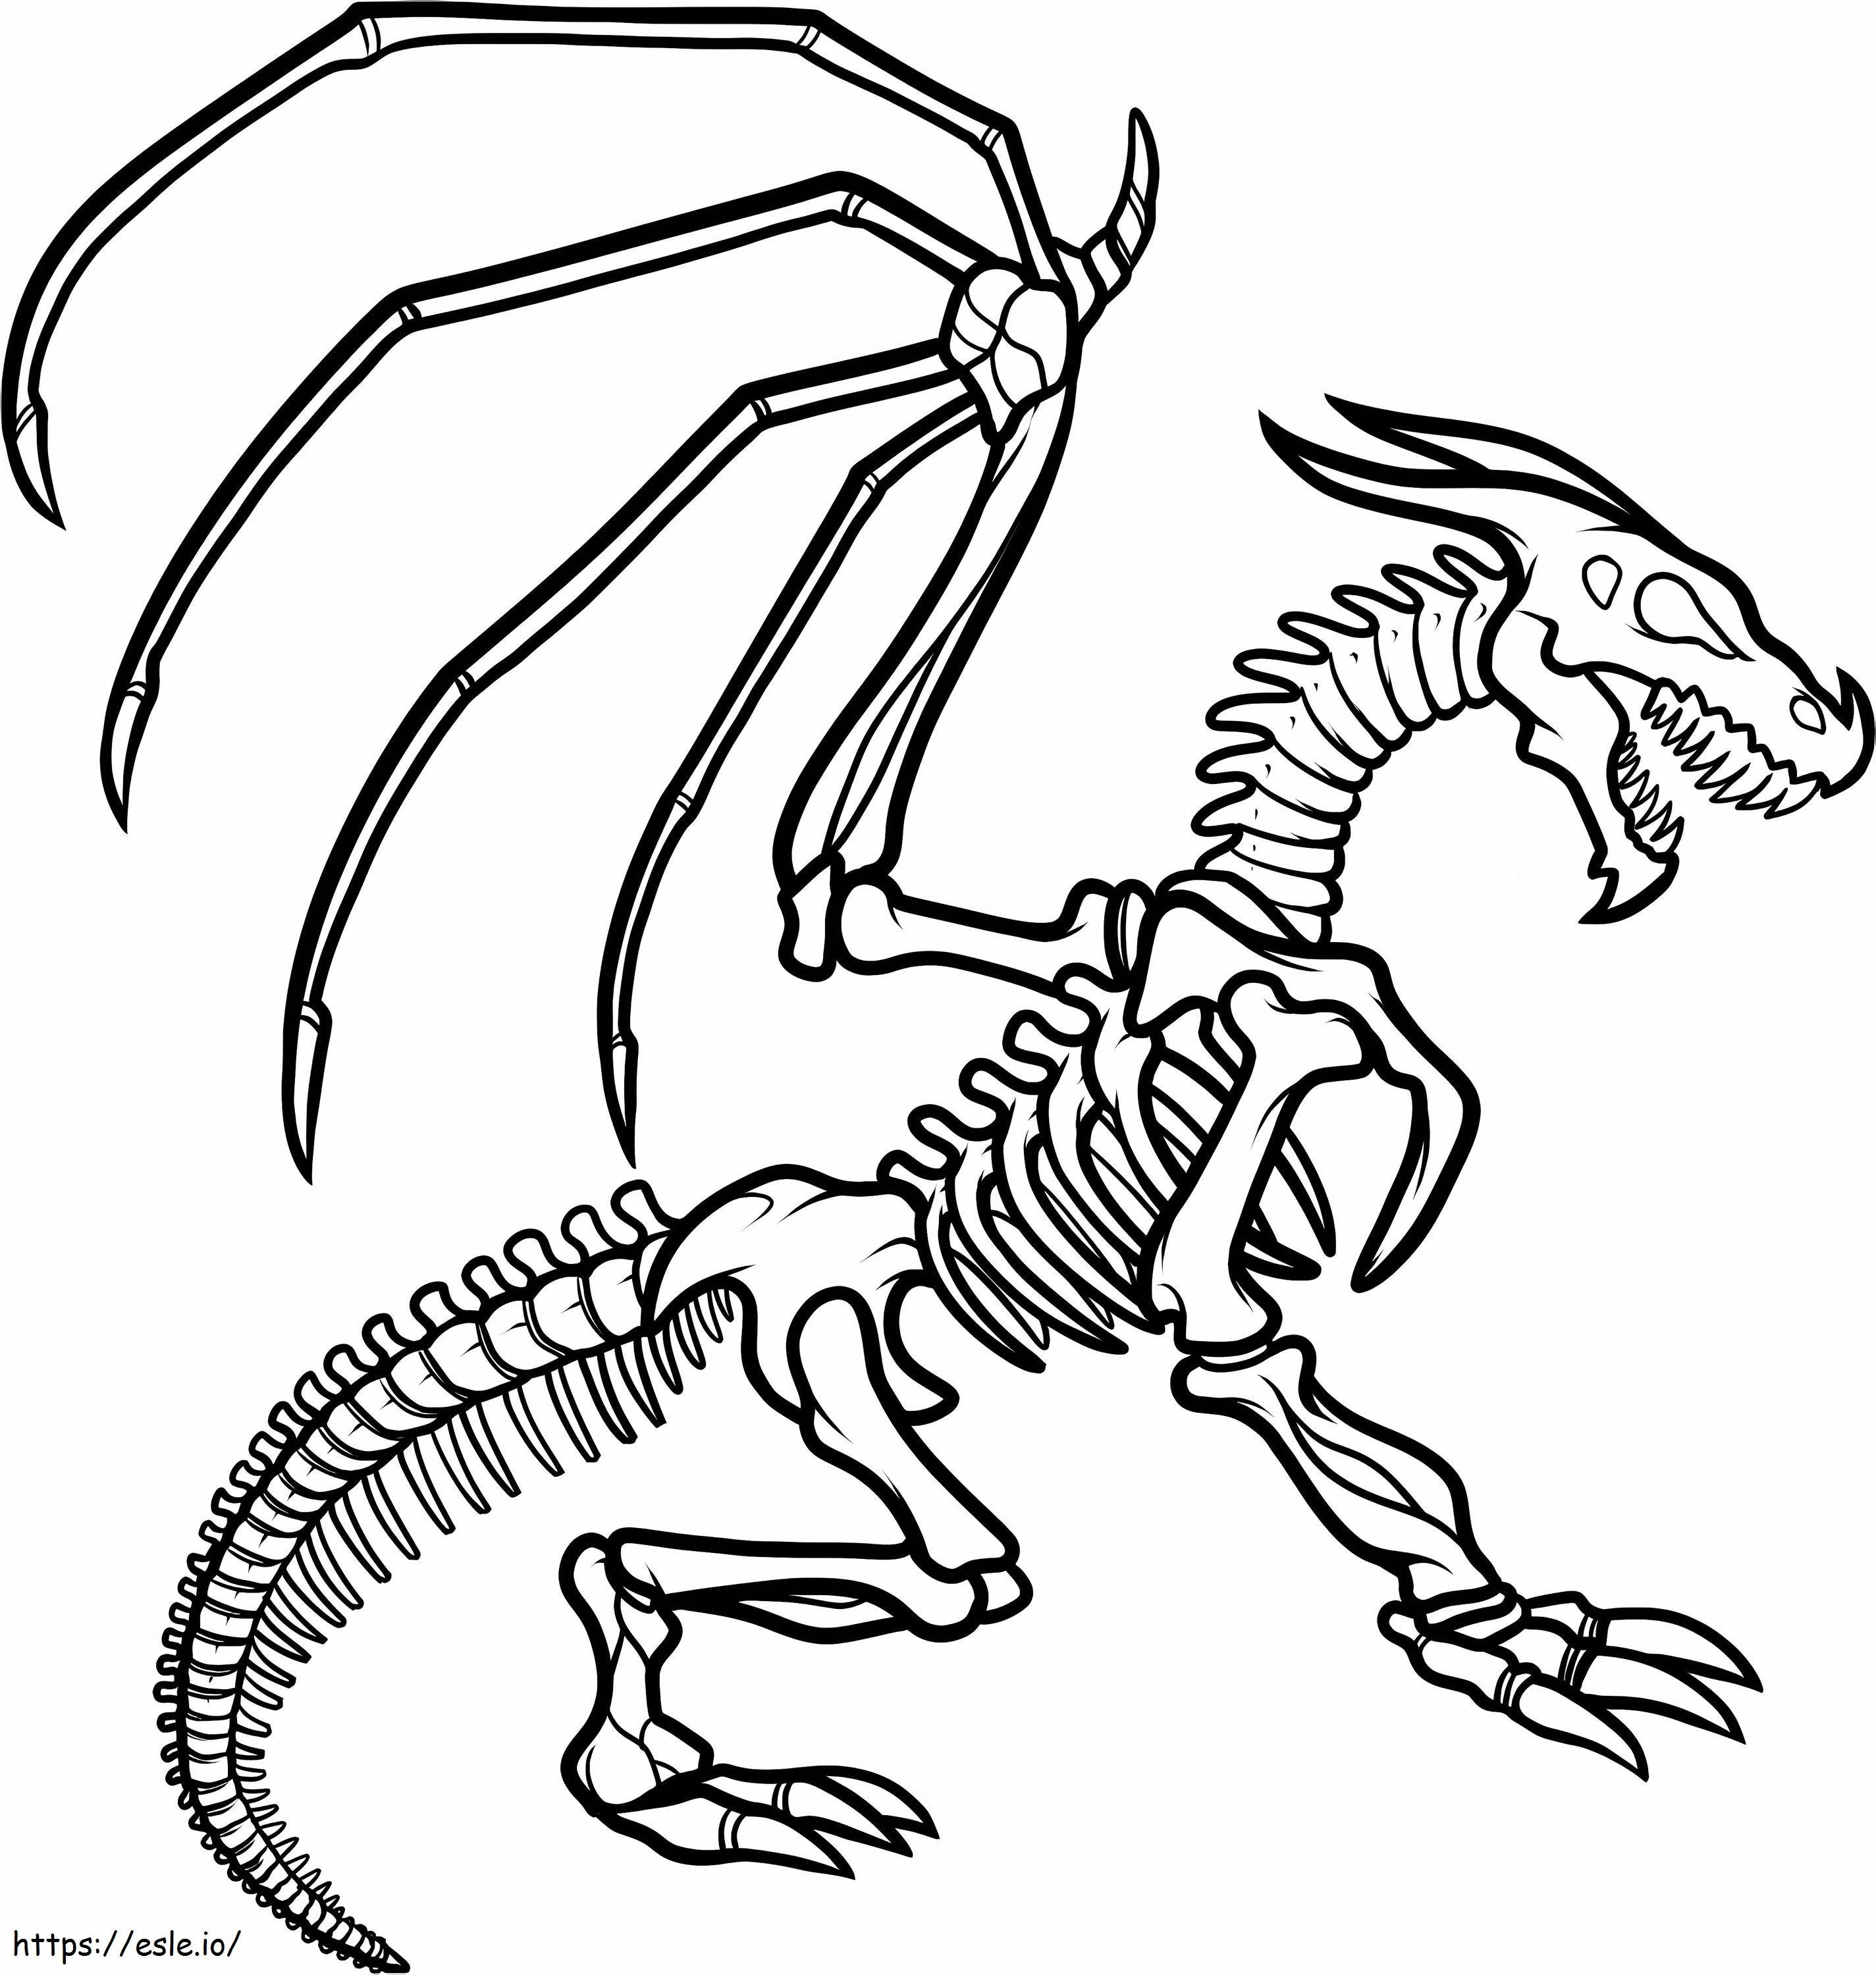 1547520862 Esikoulu Kuinka piirtää lohikäärmeen luuranko Lohikäärmeen luuranko, kirjoittanut Ilovepacsterandclyde D8Jkzcq värityskuva